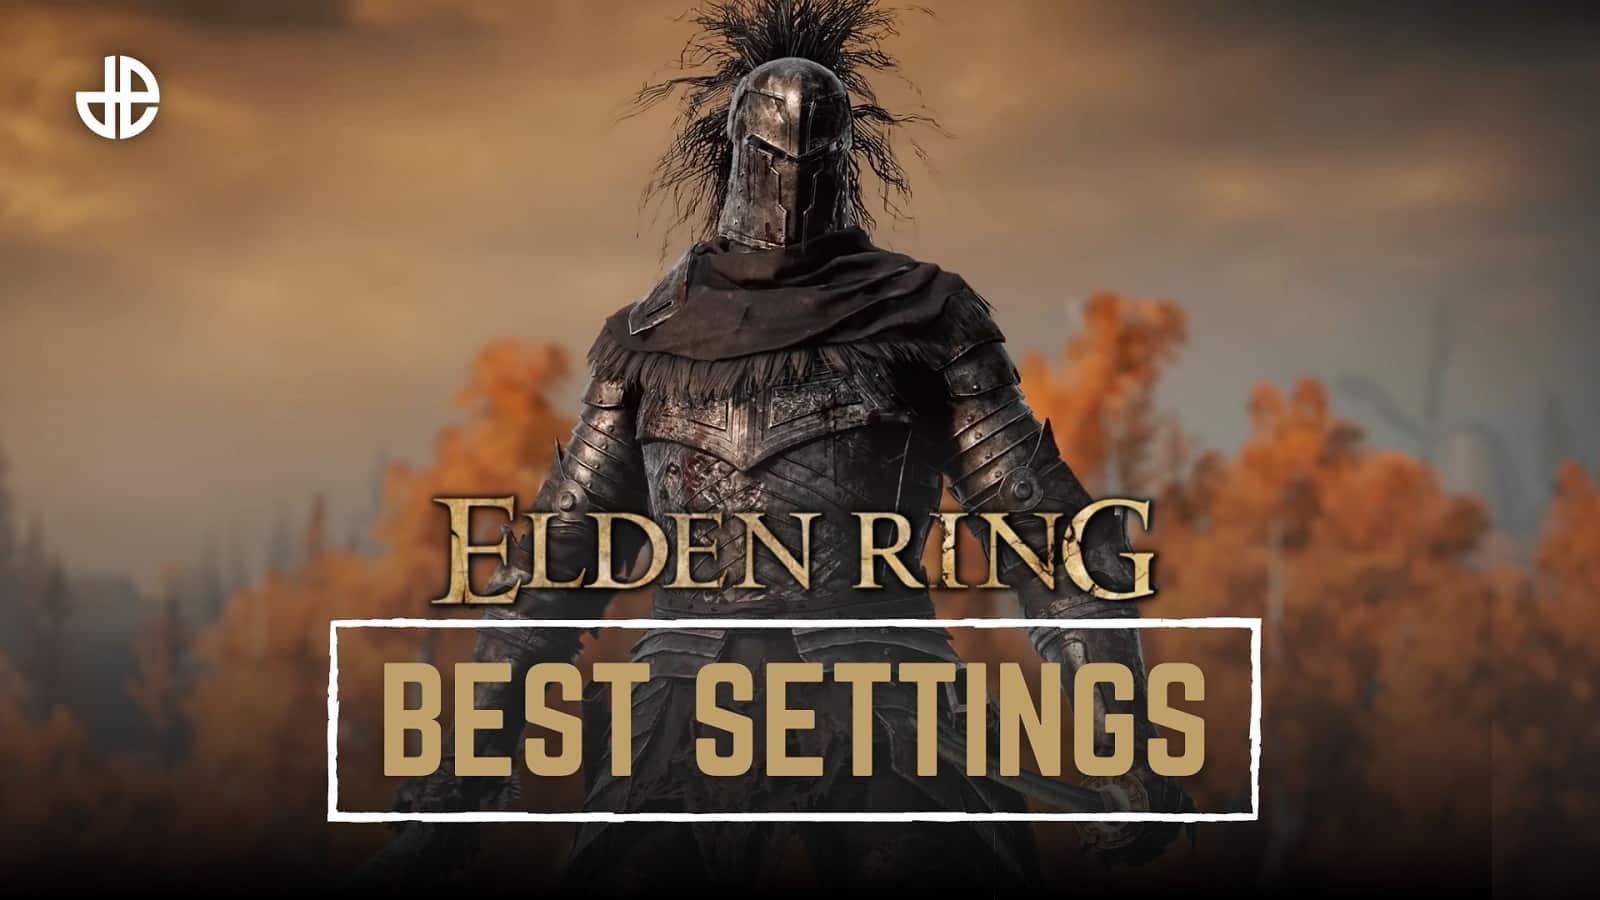 Elden Ring Knight з найкращими налаштуваннями в тексті на зображенні